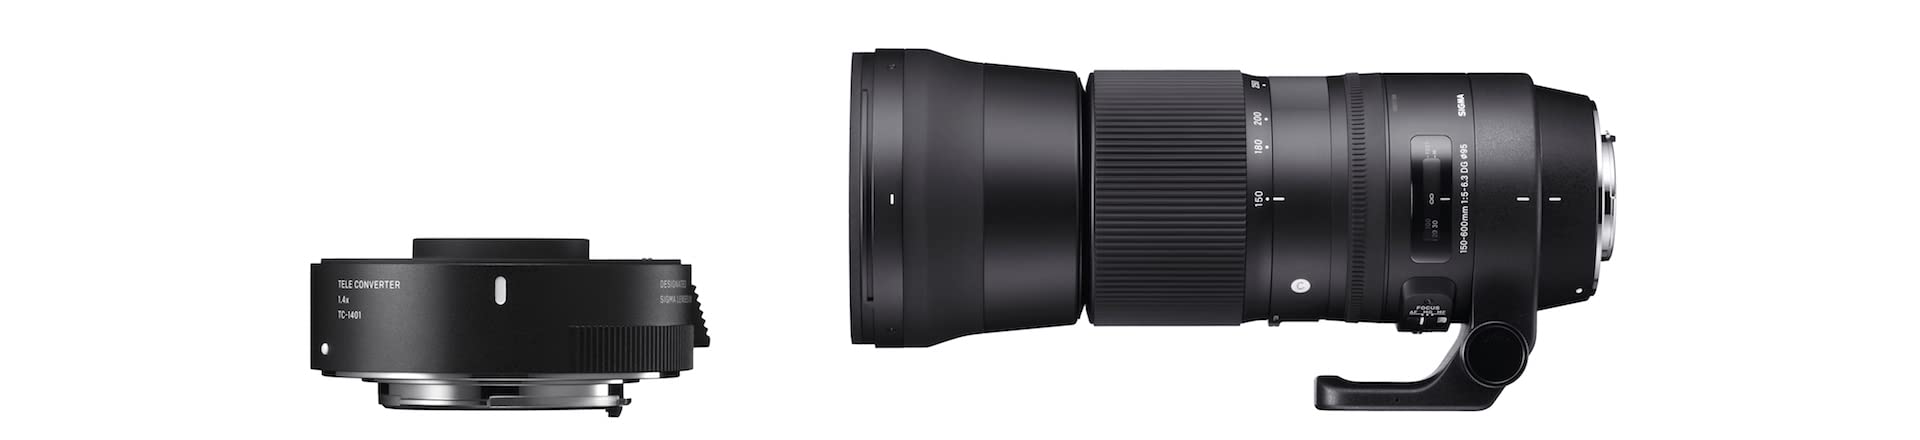 Sigma 150-600mm f/5-6.3 DG OS HSM Contemporary + TC-1401 (Canon) - 1